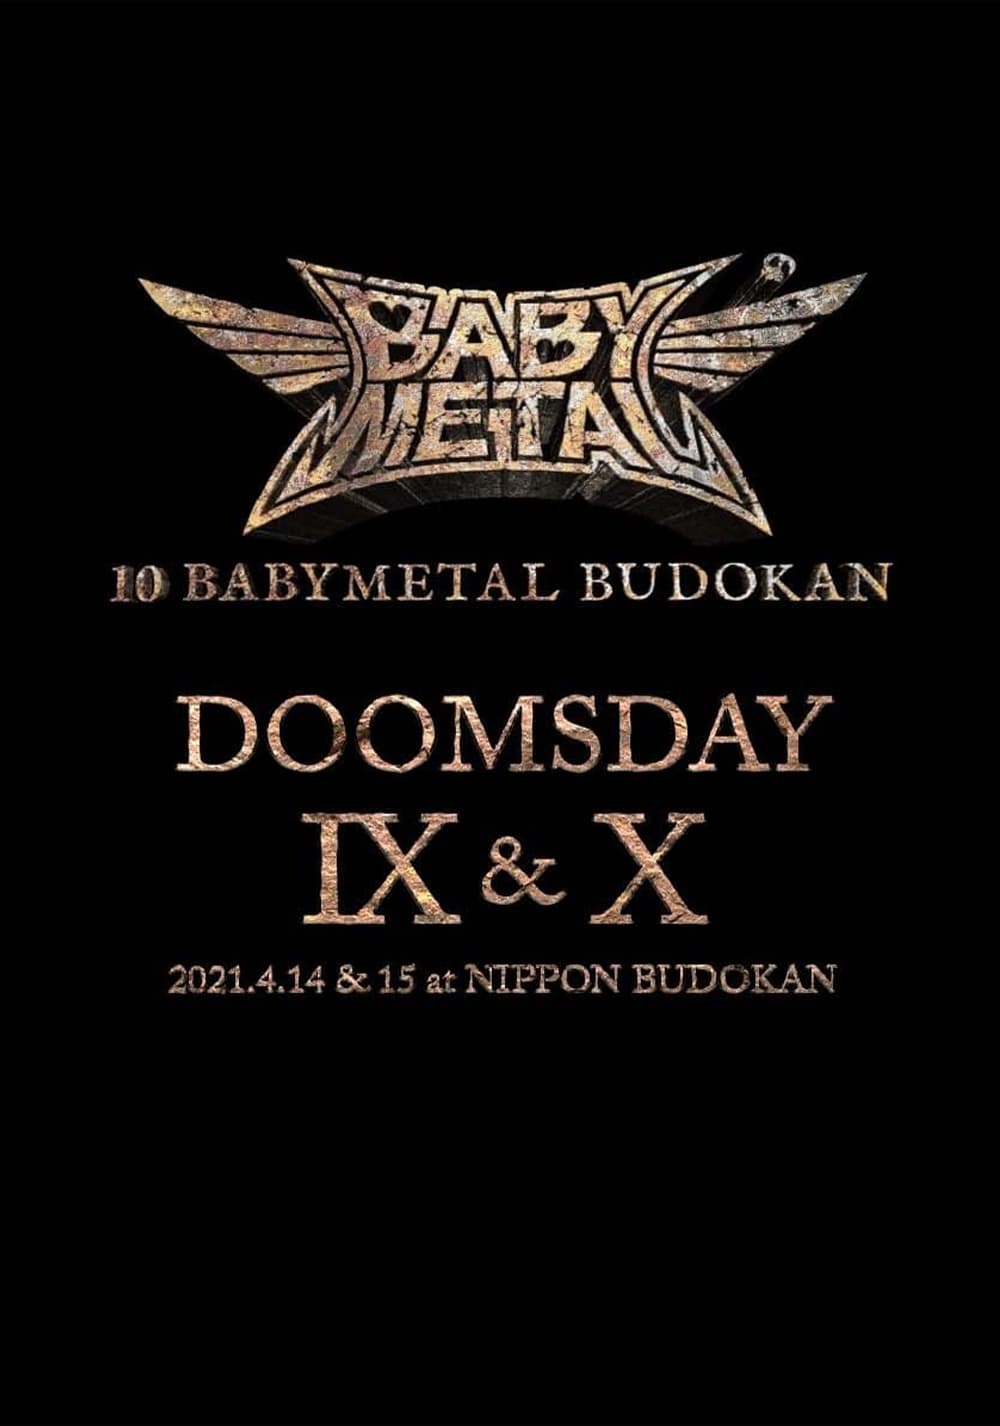 10 BABYMETAL BUDOKAN - DOOMSDAY IX & X